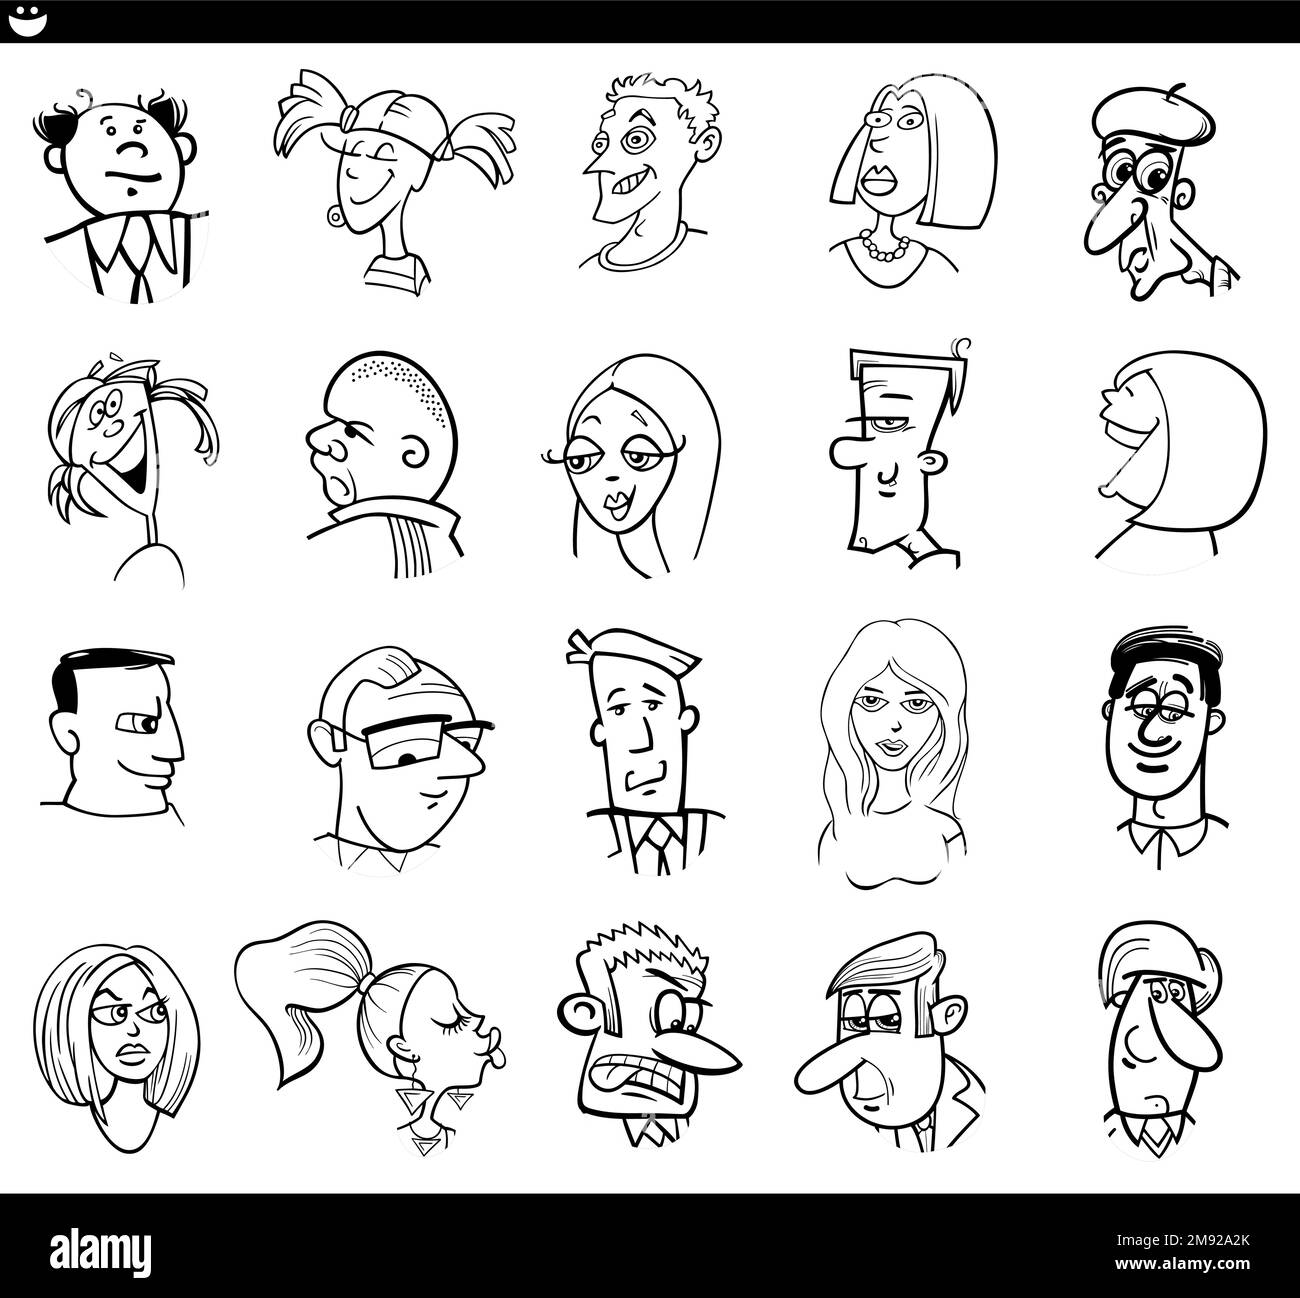 Ilustración de dibujos animados en blanco y negro de caras de personajes de personas divertidas y estados de ánimo establecidos Ilustración del Vector